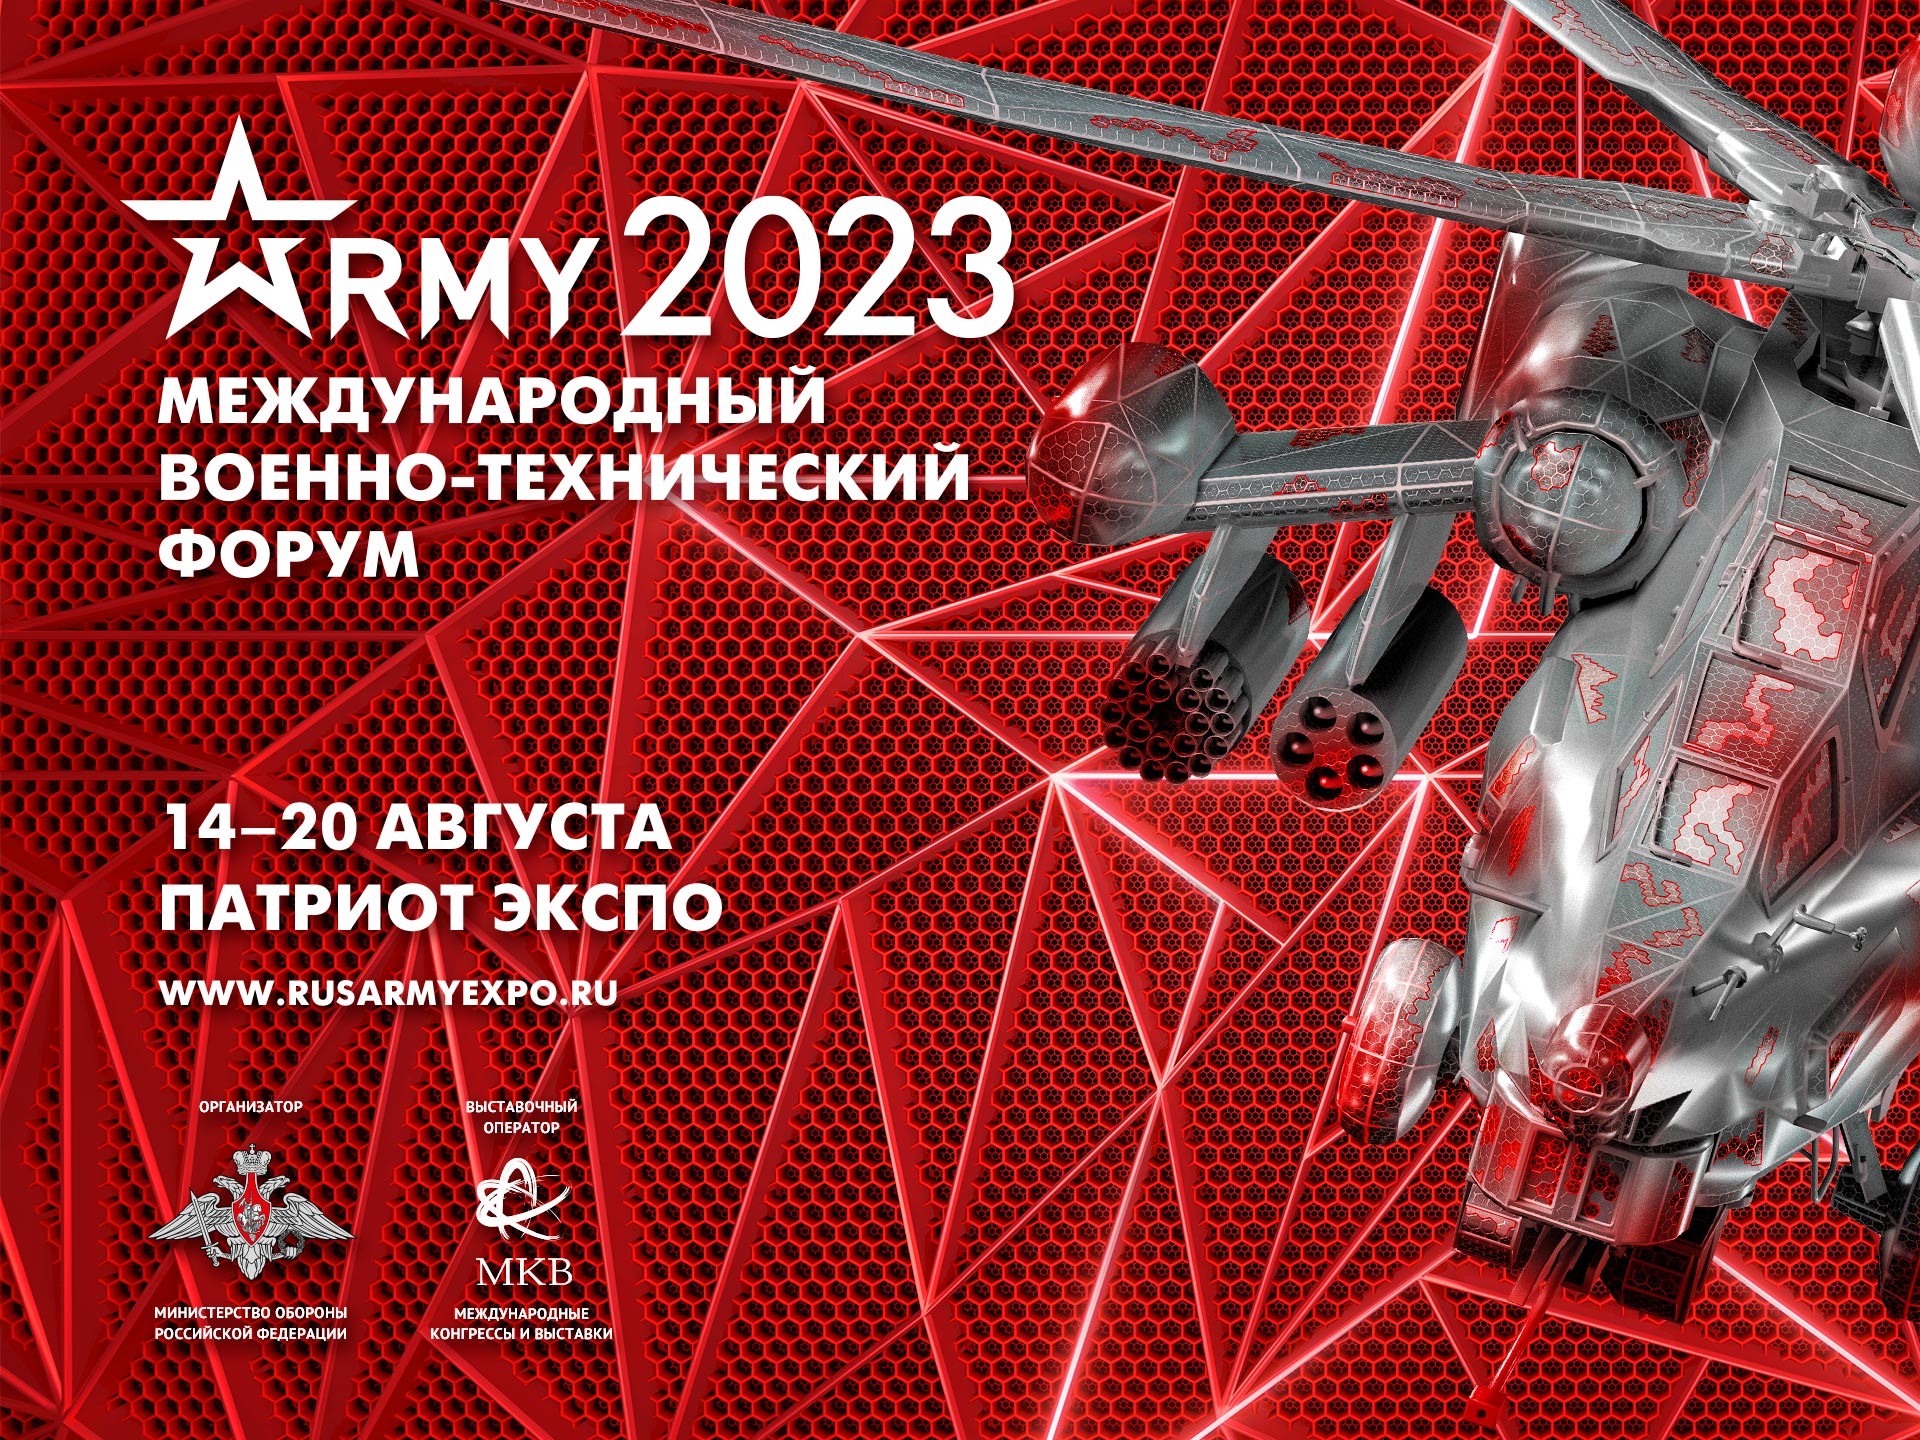 Приглашаем посетить стенд "БТК Текстиль" на Международном военно-техническом форуме "Армия-2023".